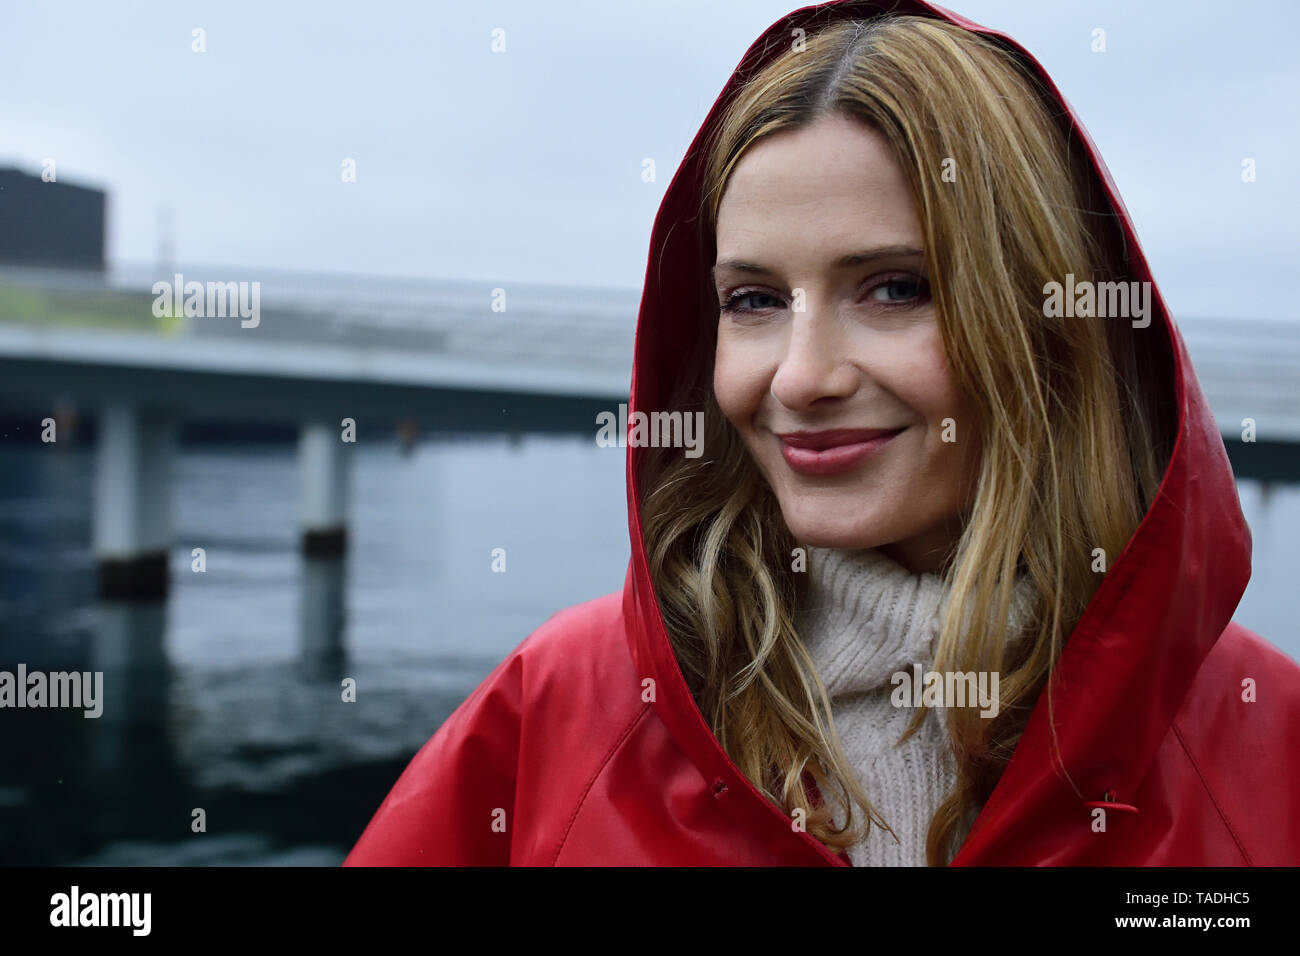 Dinamarca, Copenhague, retrato de mujer sonriente en la Costanera en un día lluvioso Foto de stock